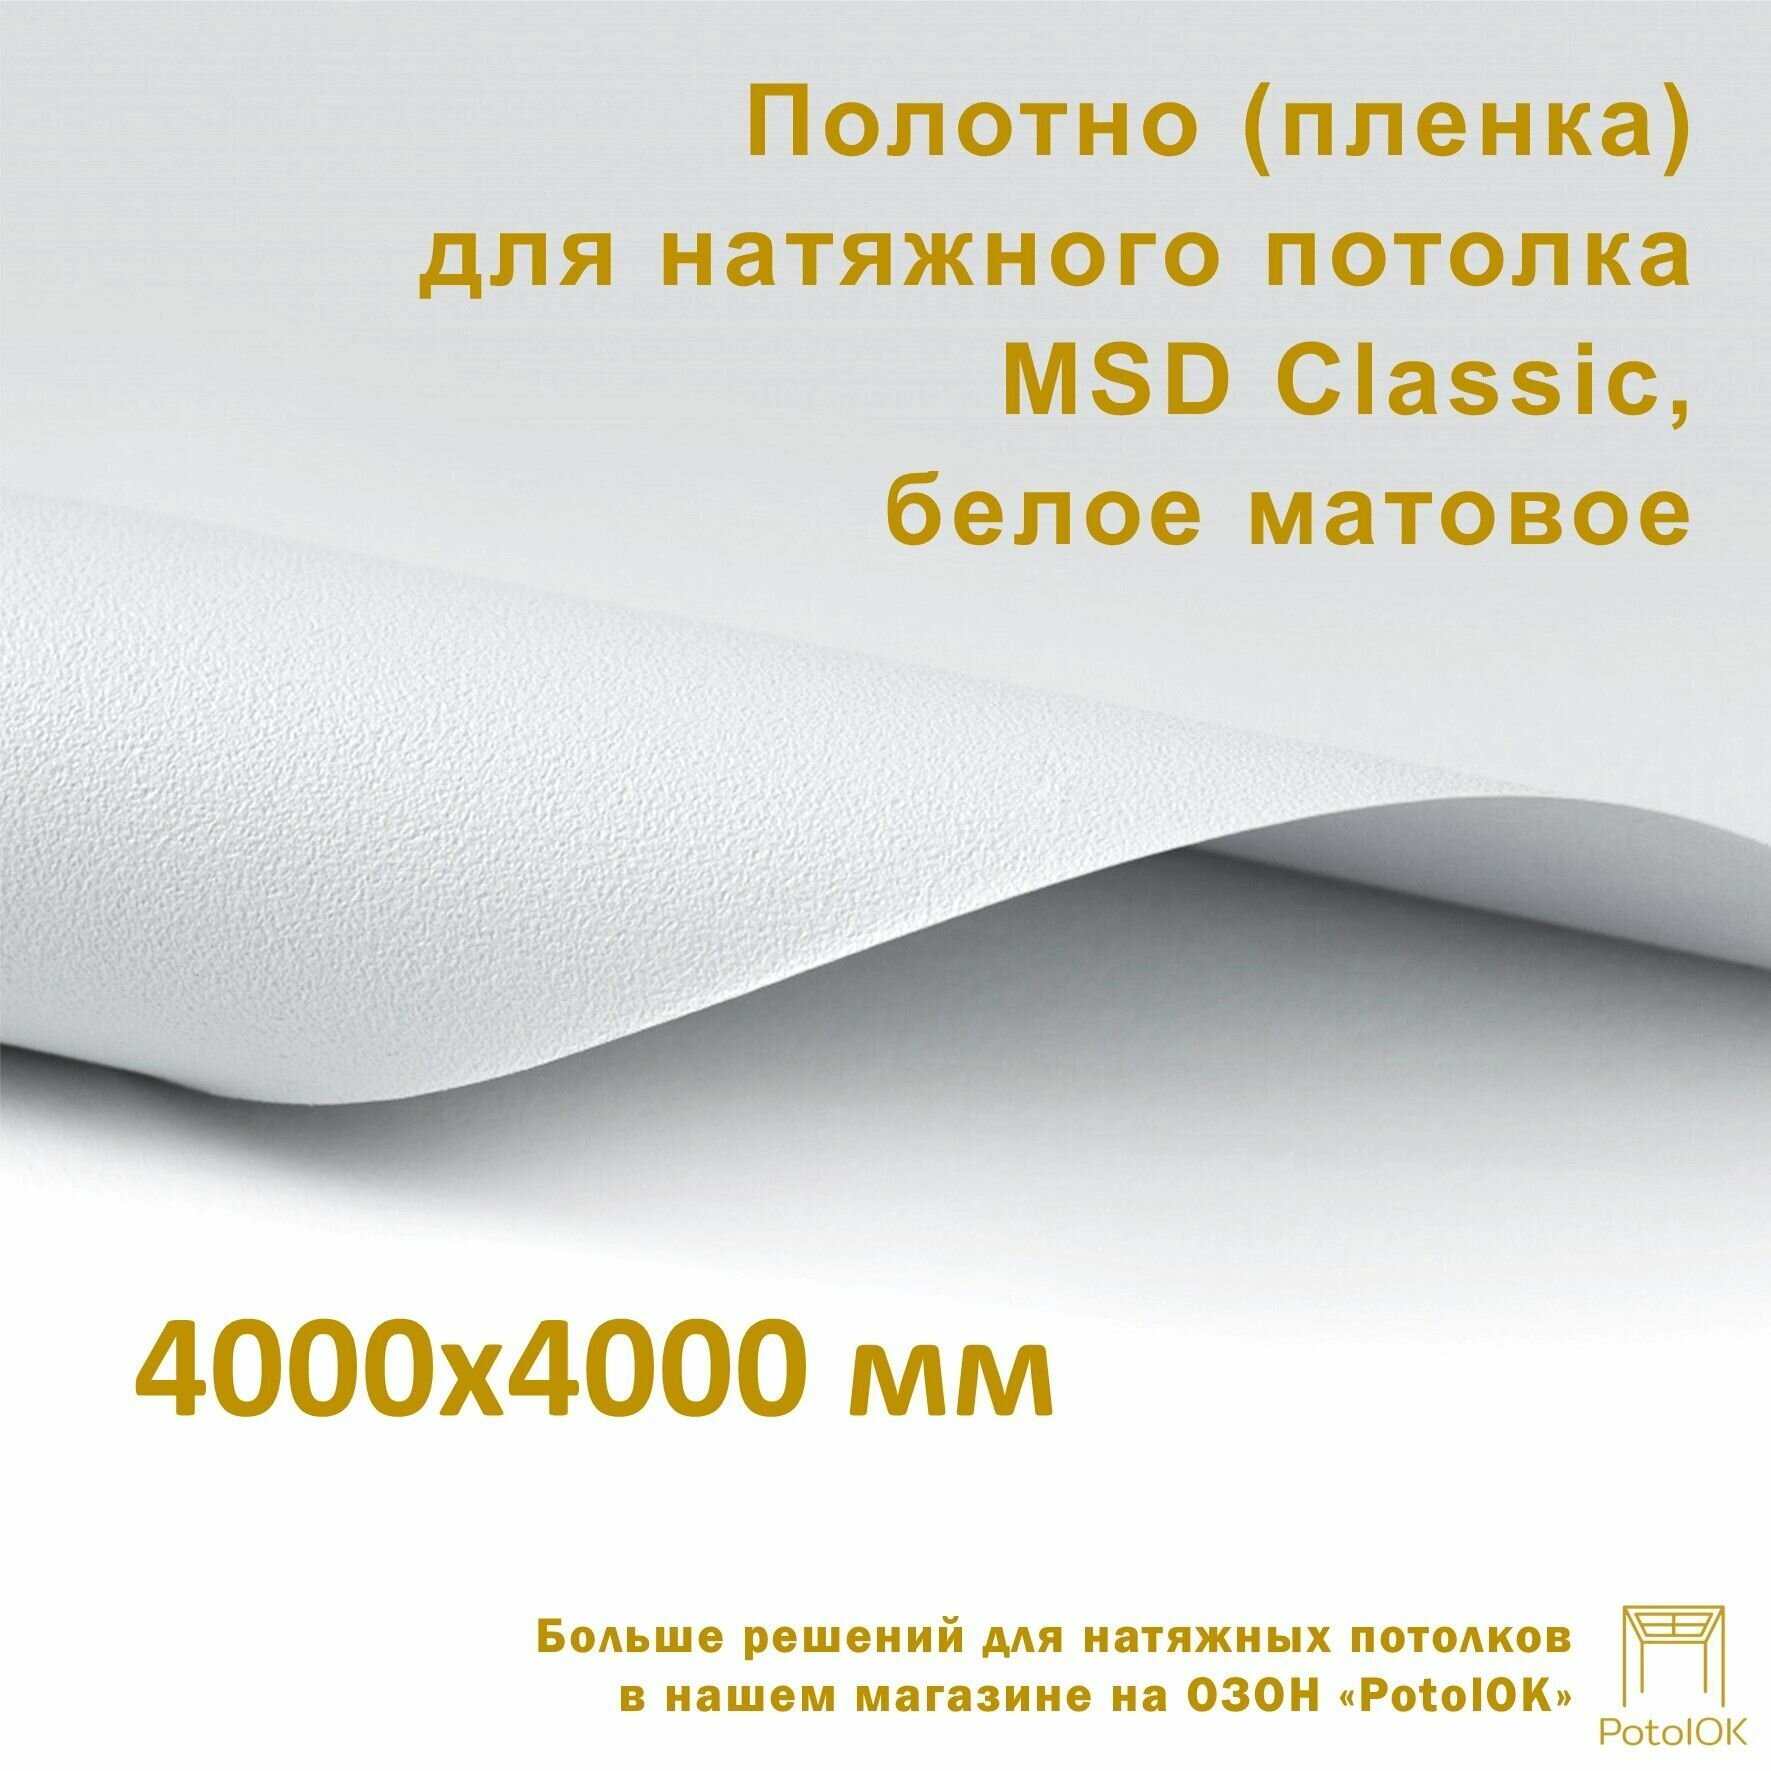 Полотно (пленка) для натяжного потолка MSD CLASSIC, белое матовое, 4000x4000 мм